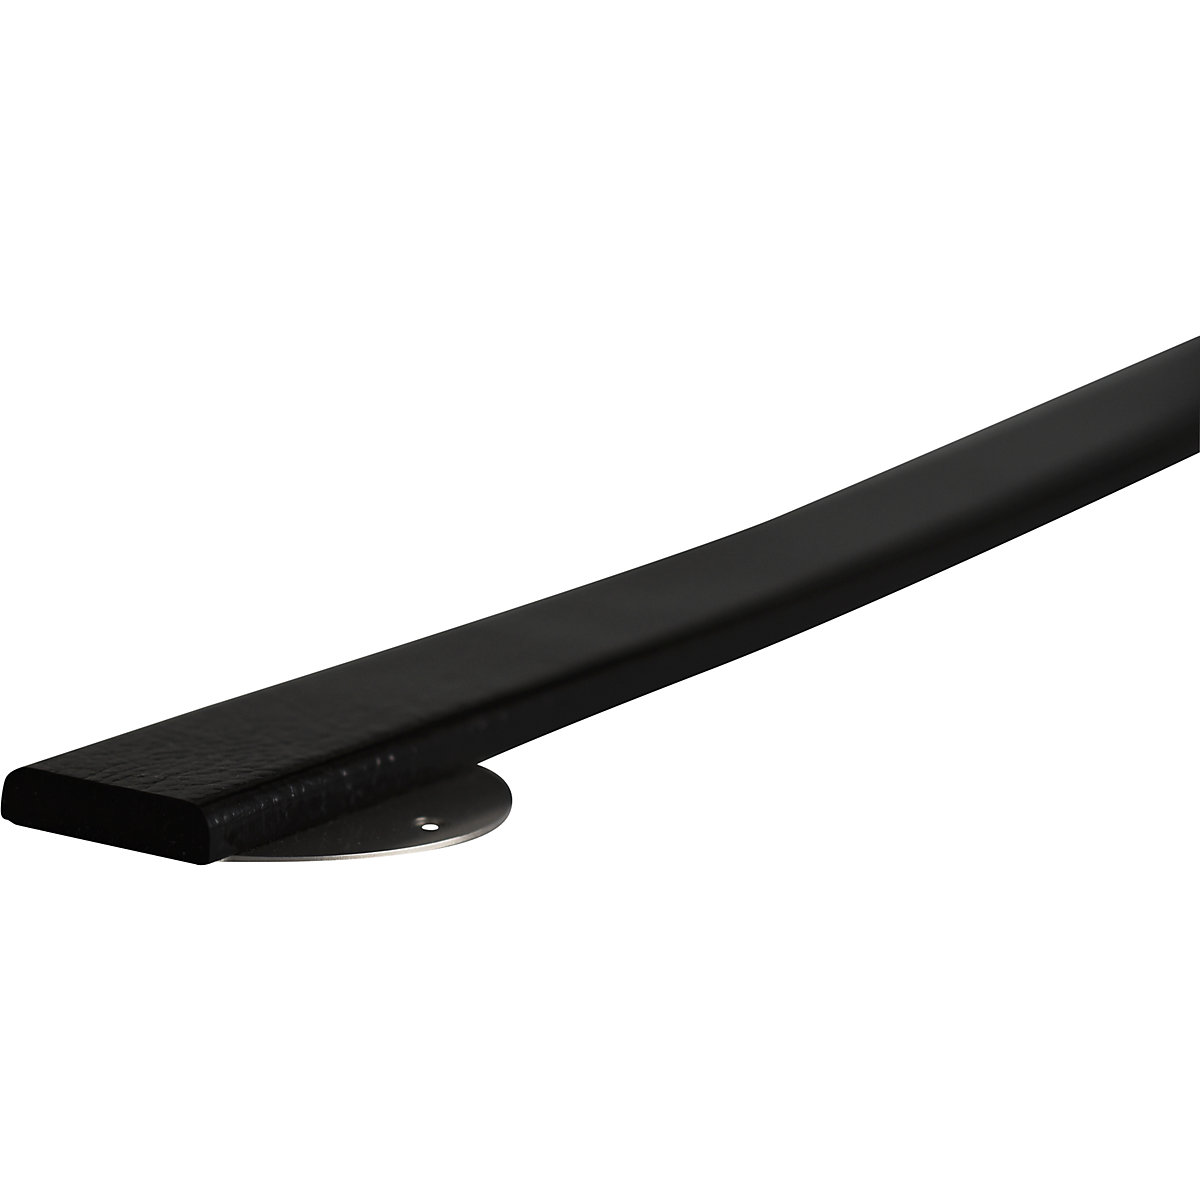 Protecție pentru suprafețe Knuffi® cu șină de montaj – SHG, tip F, bucată de 1 m, negru